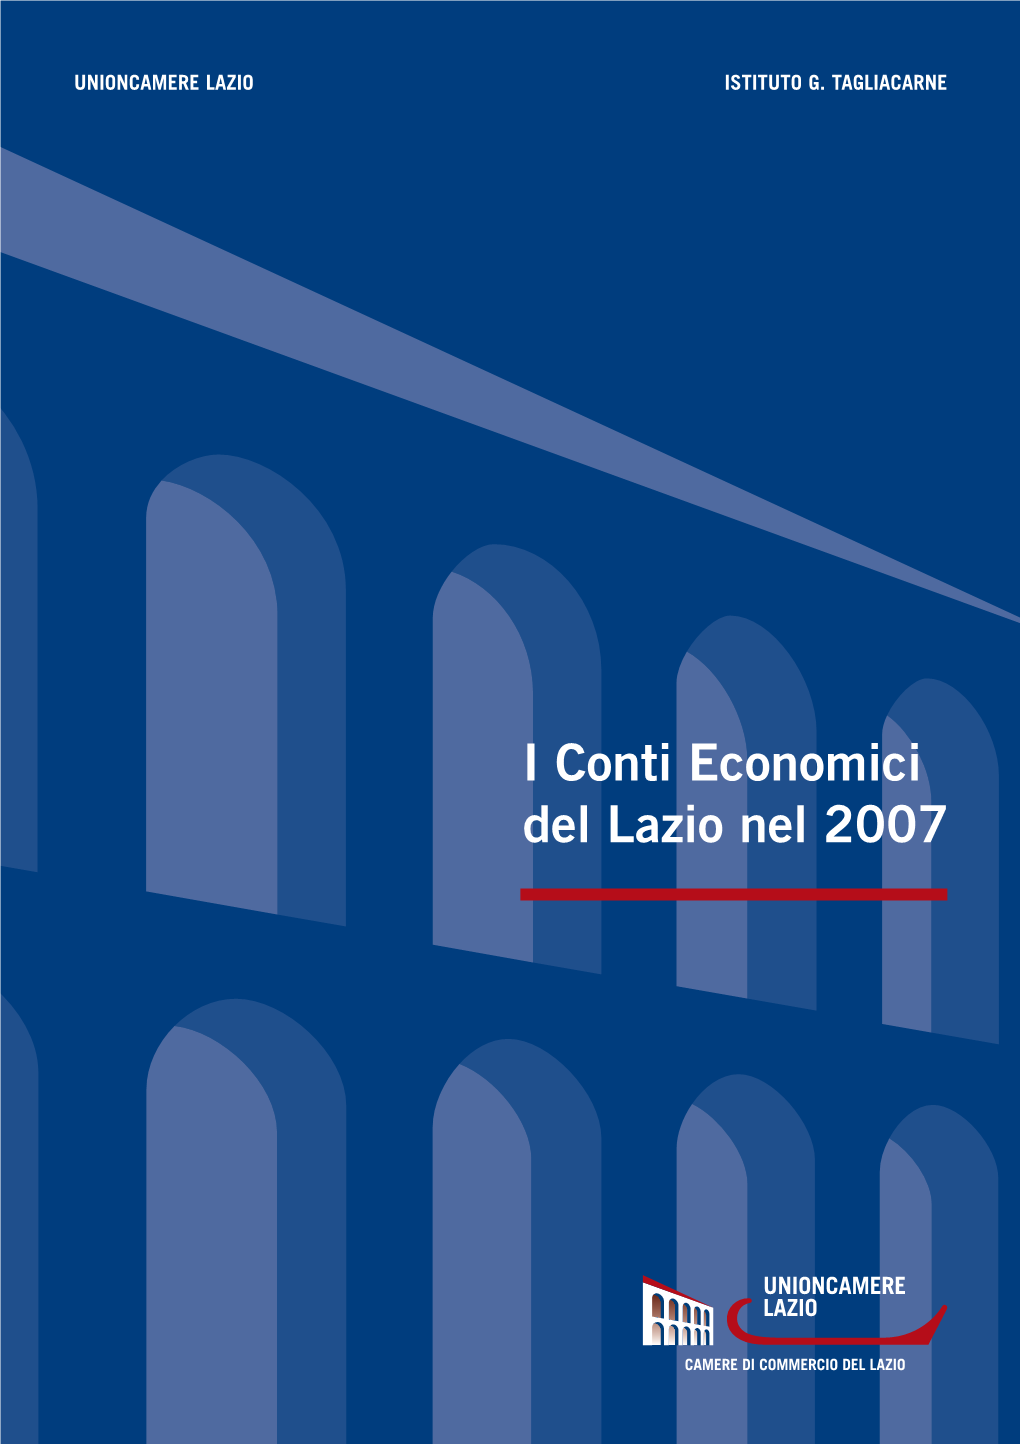 Conti Economici 2007:Layout 1 10-02-2009 17:03 Pagina 1 UNIONCAMERE LAZIO • ISTITUTO TAGLIACARNE UNIONCAMERE LAZIO ISTITUTO G